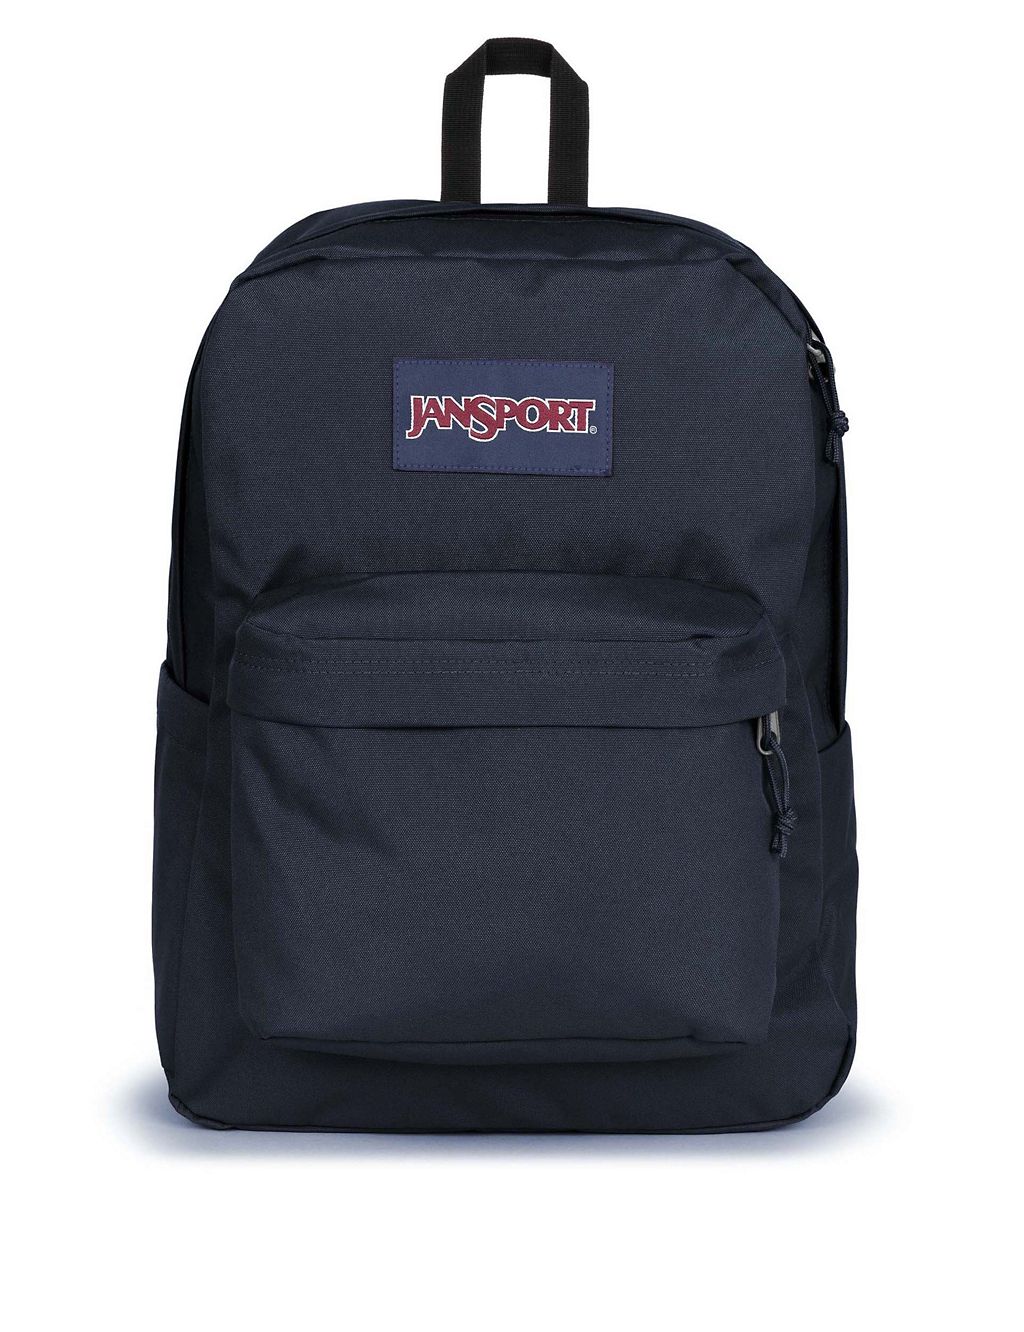 SuperBreak Plus Backpack 3 of 5